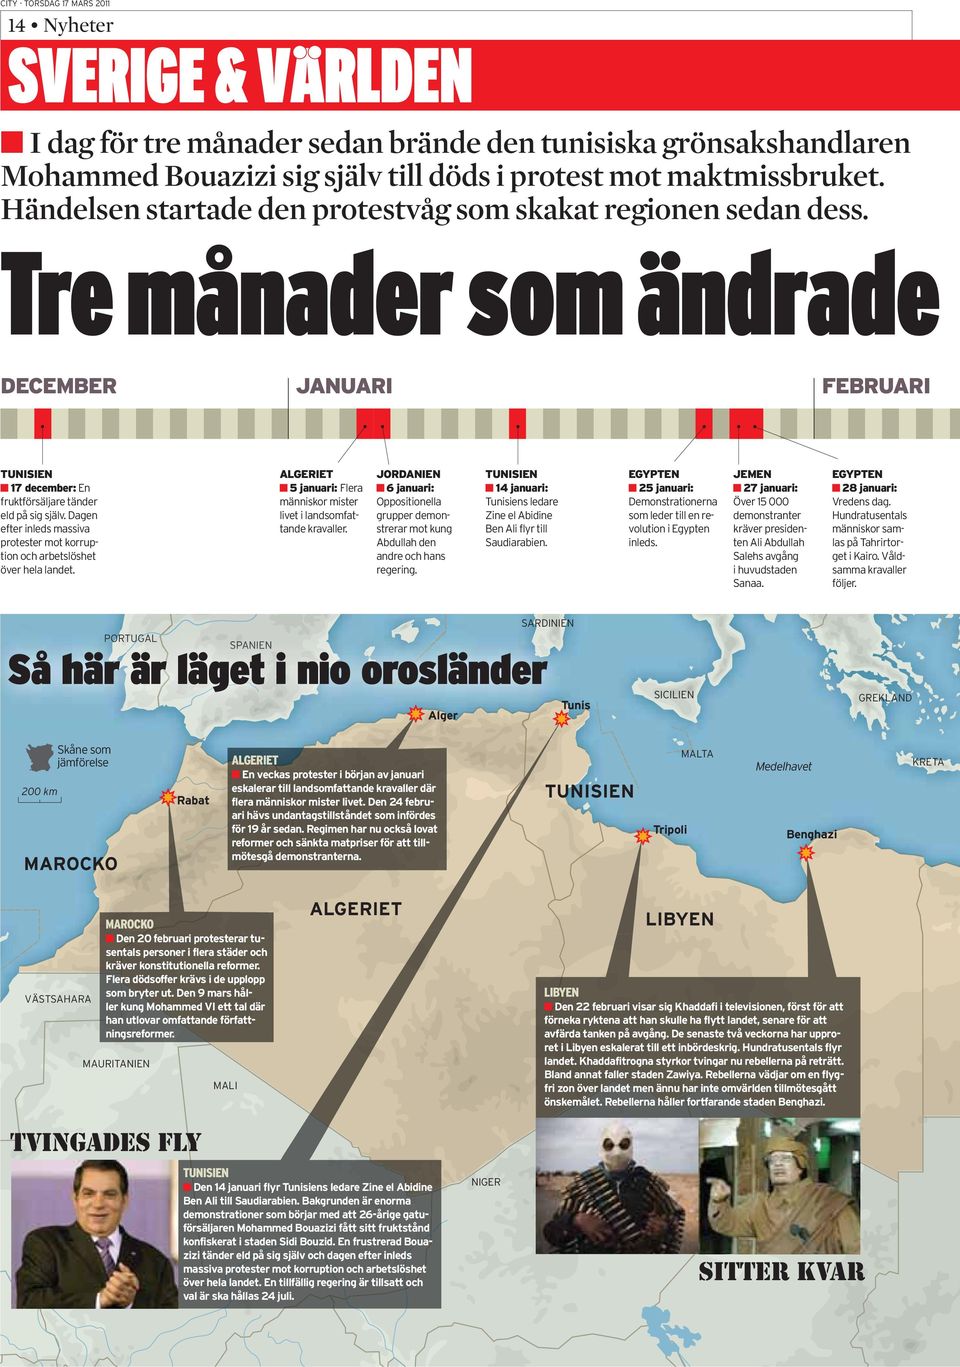 Tre månader som ändrade SARDINIEN PORTUGAL SPANIEN Så här är läget i nio orosländer Tunis Alger SICILIEN GREKLAND 200 km Skåne